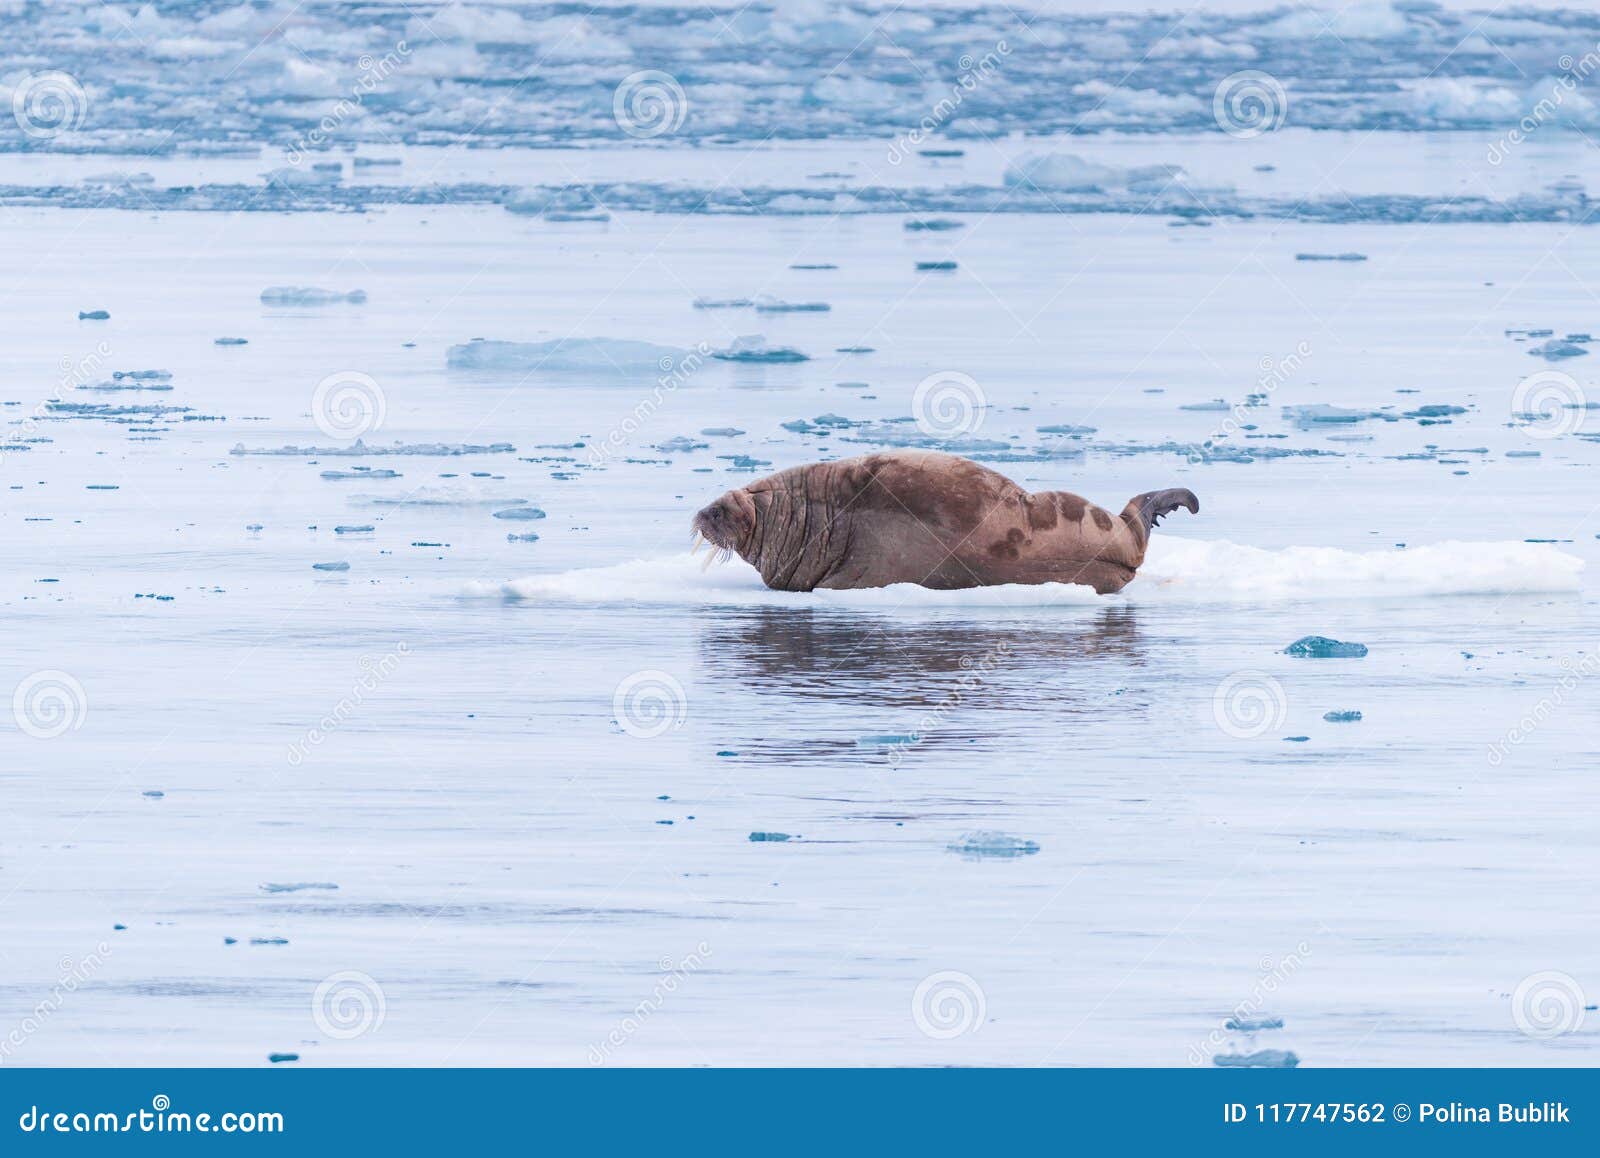 Ajardine la morsa de la naturaleza en una masa de hielo flotante de hielo del día ártico de la sol del invierno de Spitsbergen Lo. Morsa de la naturaleza del paisaje de Noruega en una masa de hielo flotante de hielo del cielo polar del día de la sol del invierno ártico de Spitsbergen Longyearbyen Svalbard